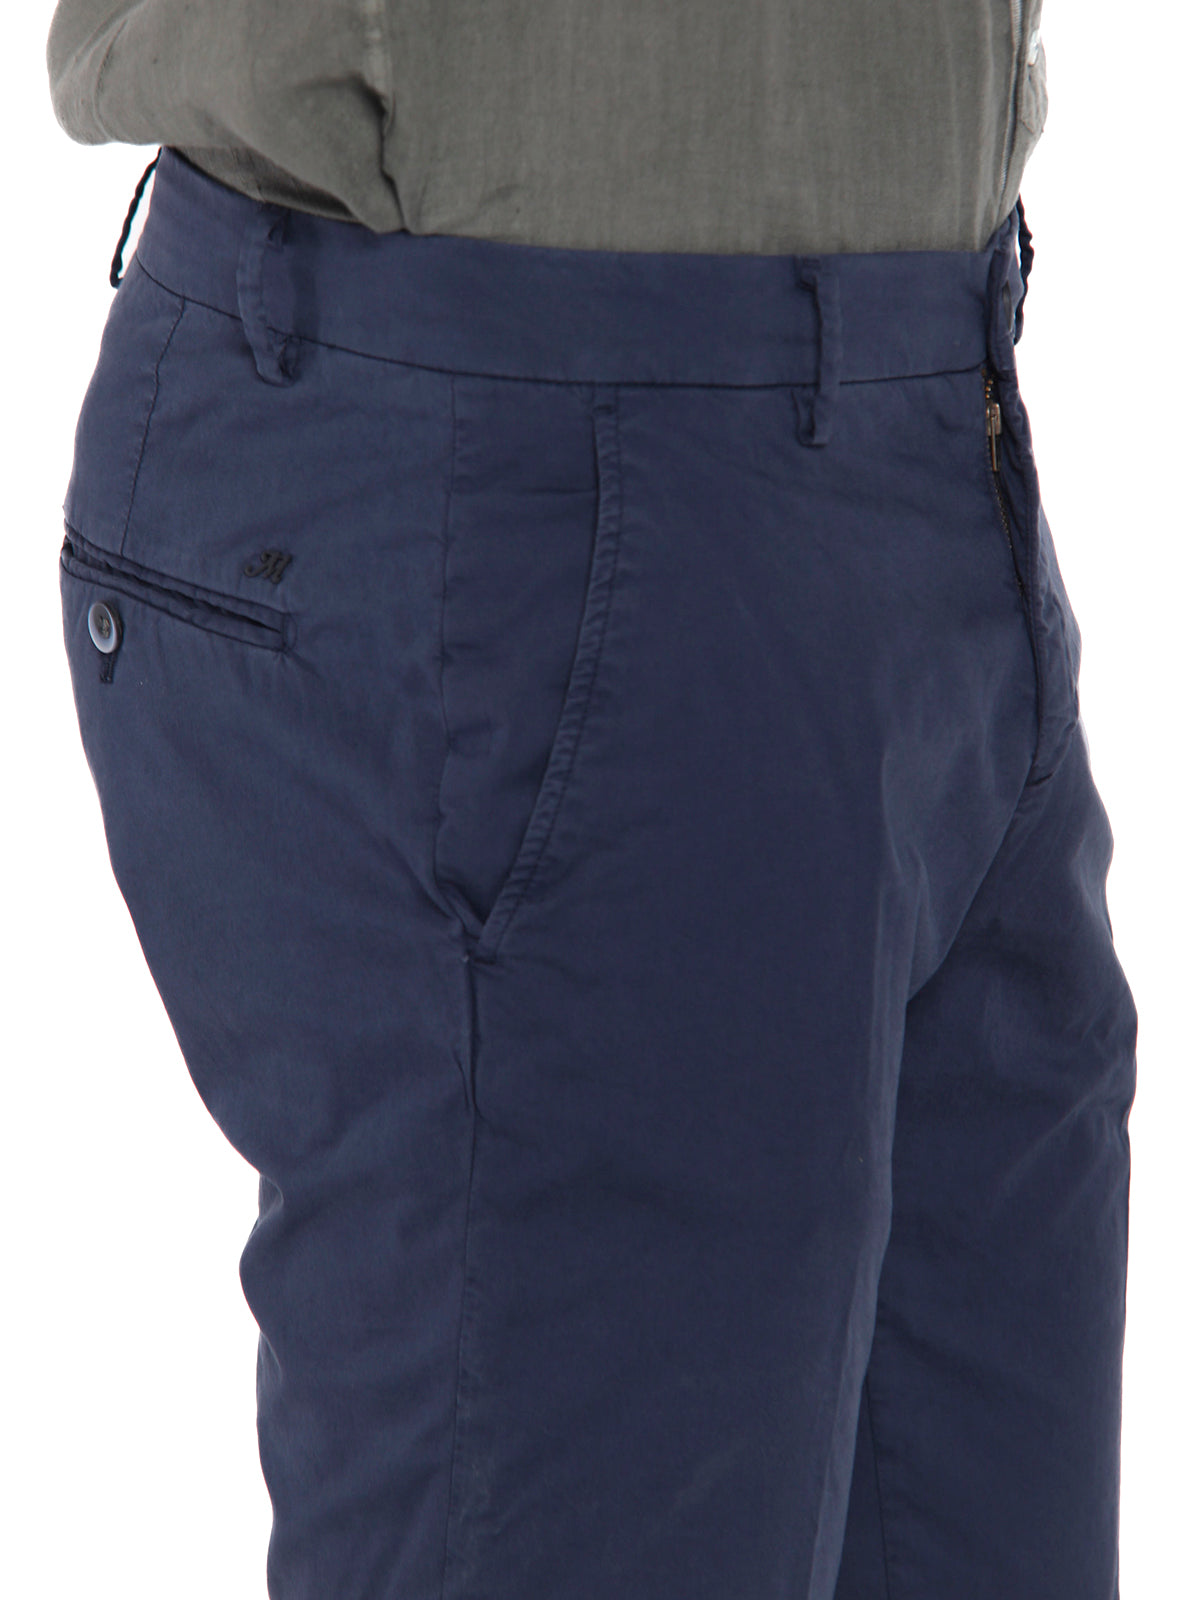 Pantaloni Uomo Mason's - Milano Style Pantalone Chino Extra Slim - Blu